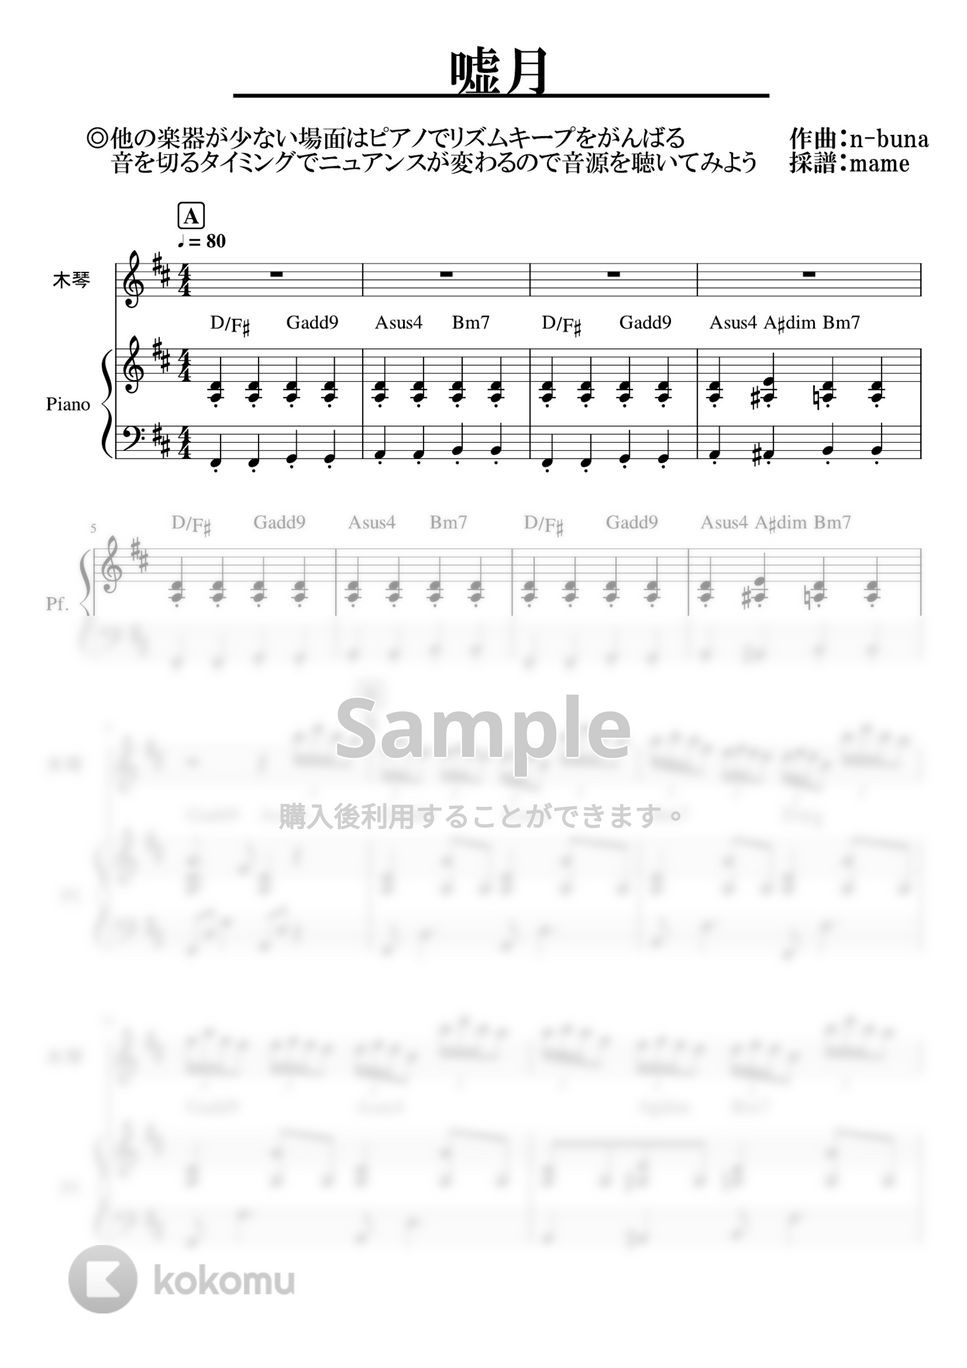 ヨルシカ - 嘘月 (ピアノ・キーボードパート) by mame